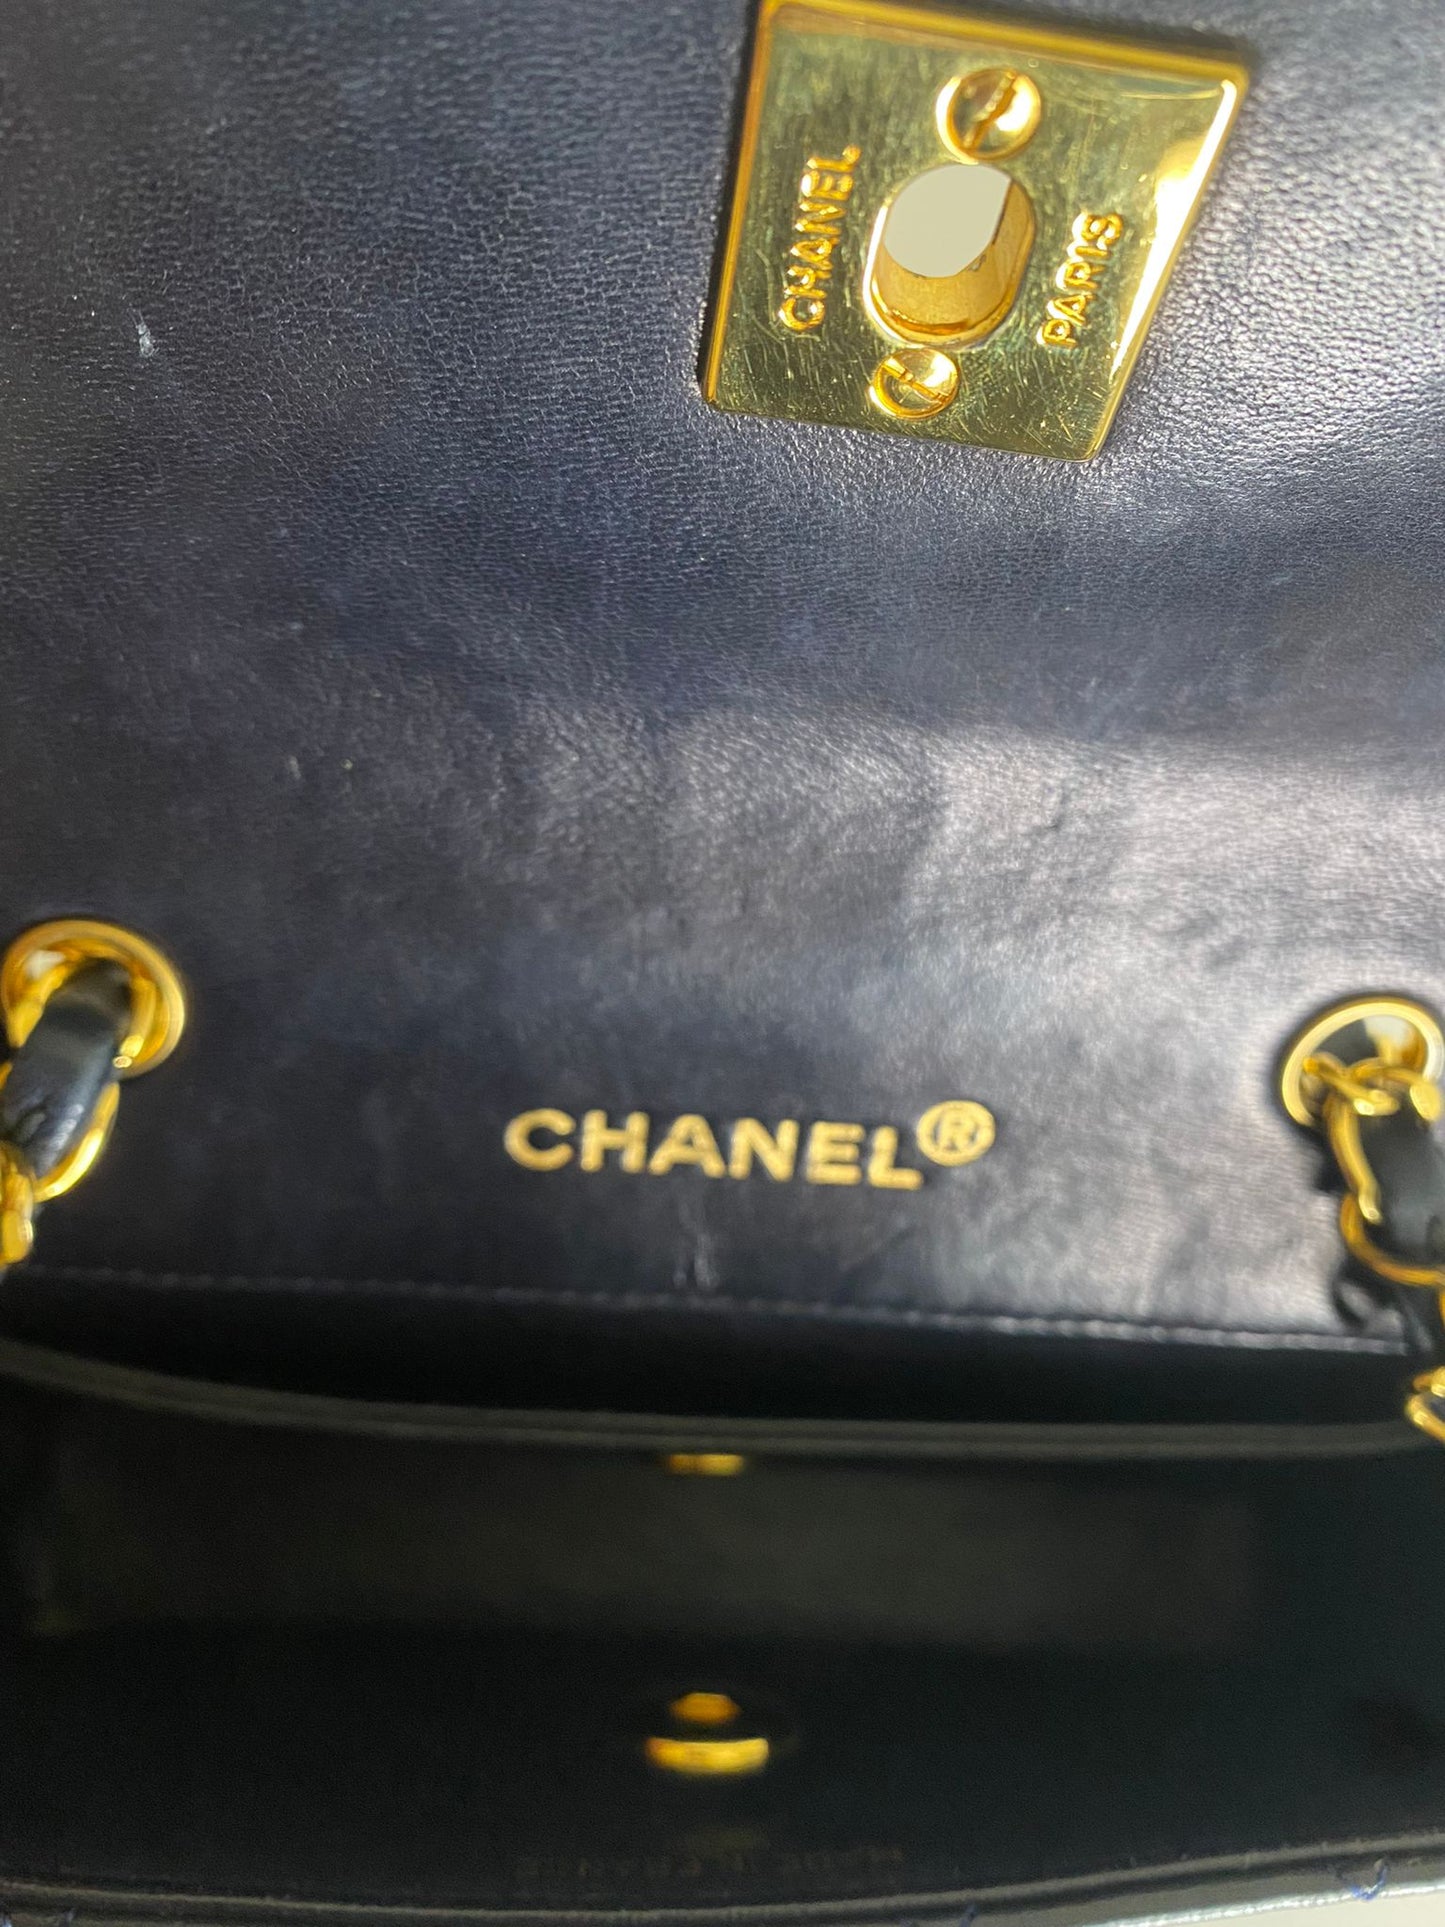 Chanel 2.55 piccola edizione limitata